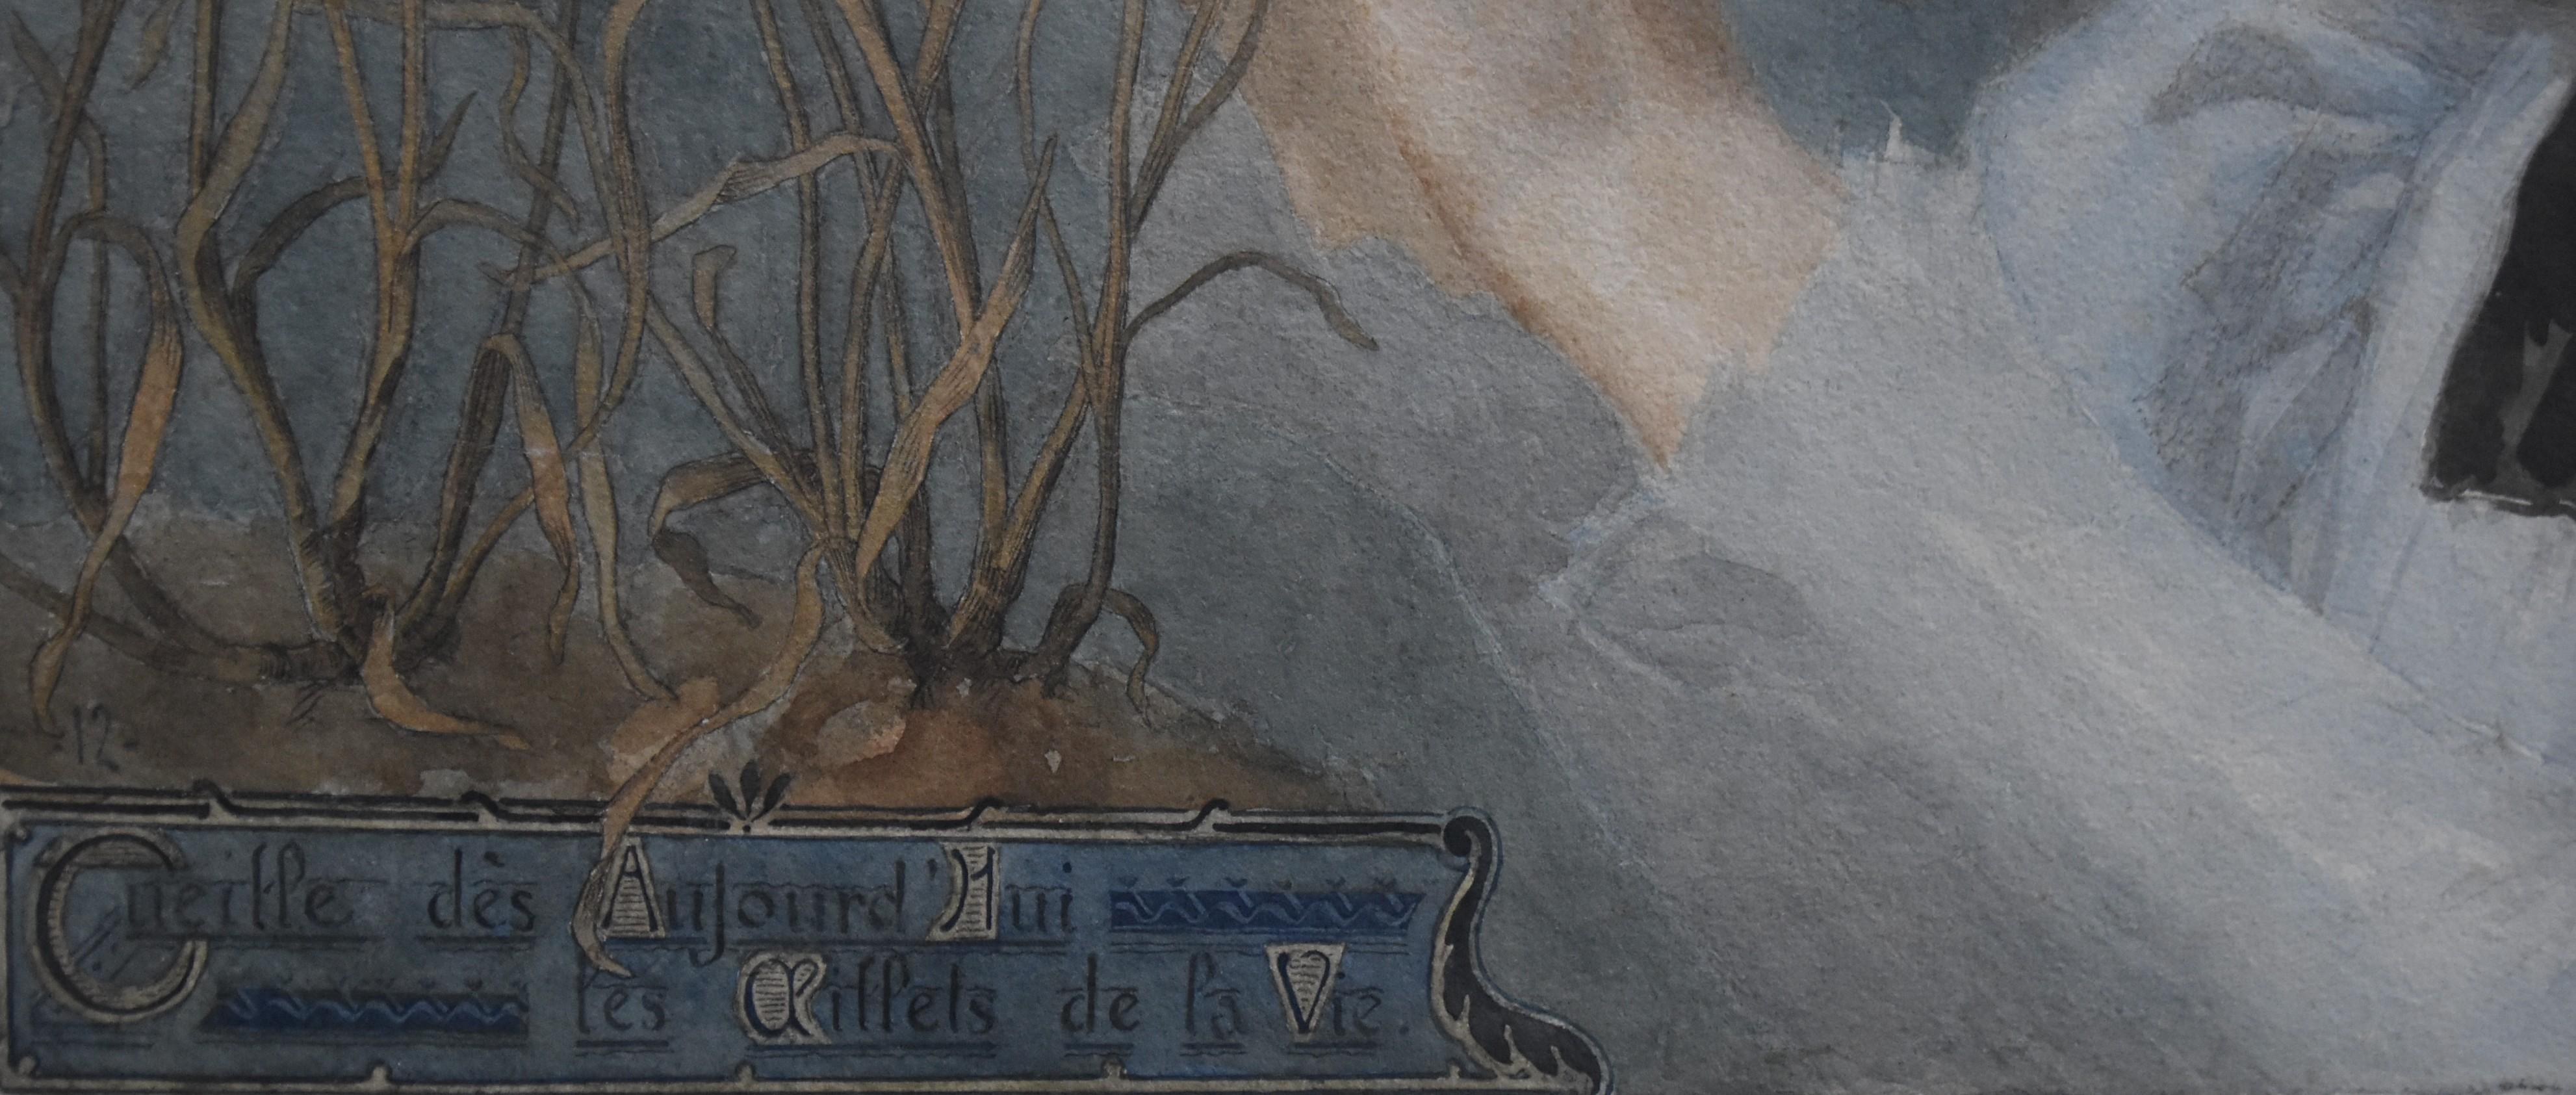 Gustave Riquet (1866-1938)  Les Œillets de la vie, 1898 watercolor signed   For Sale 5